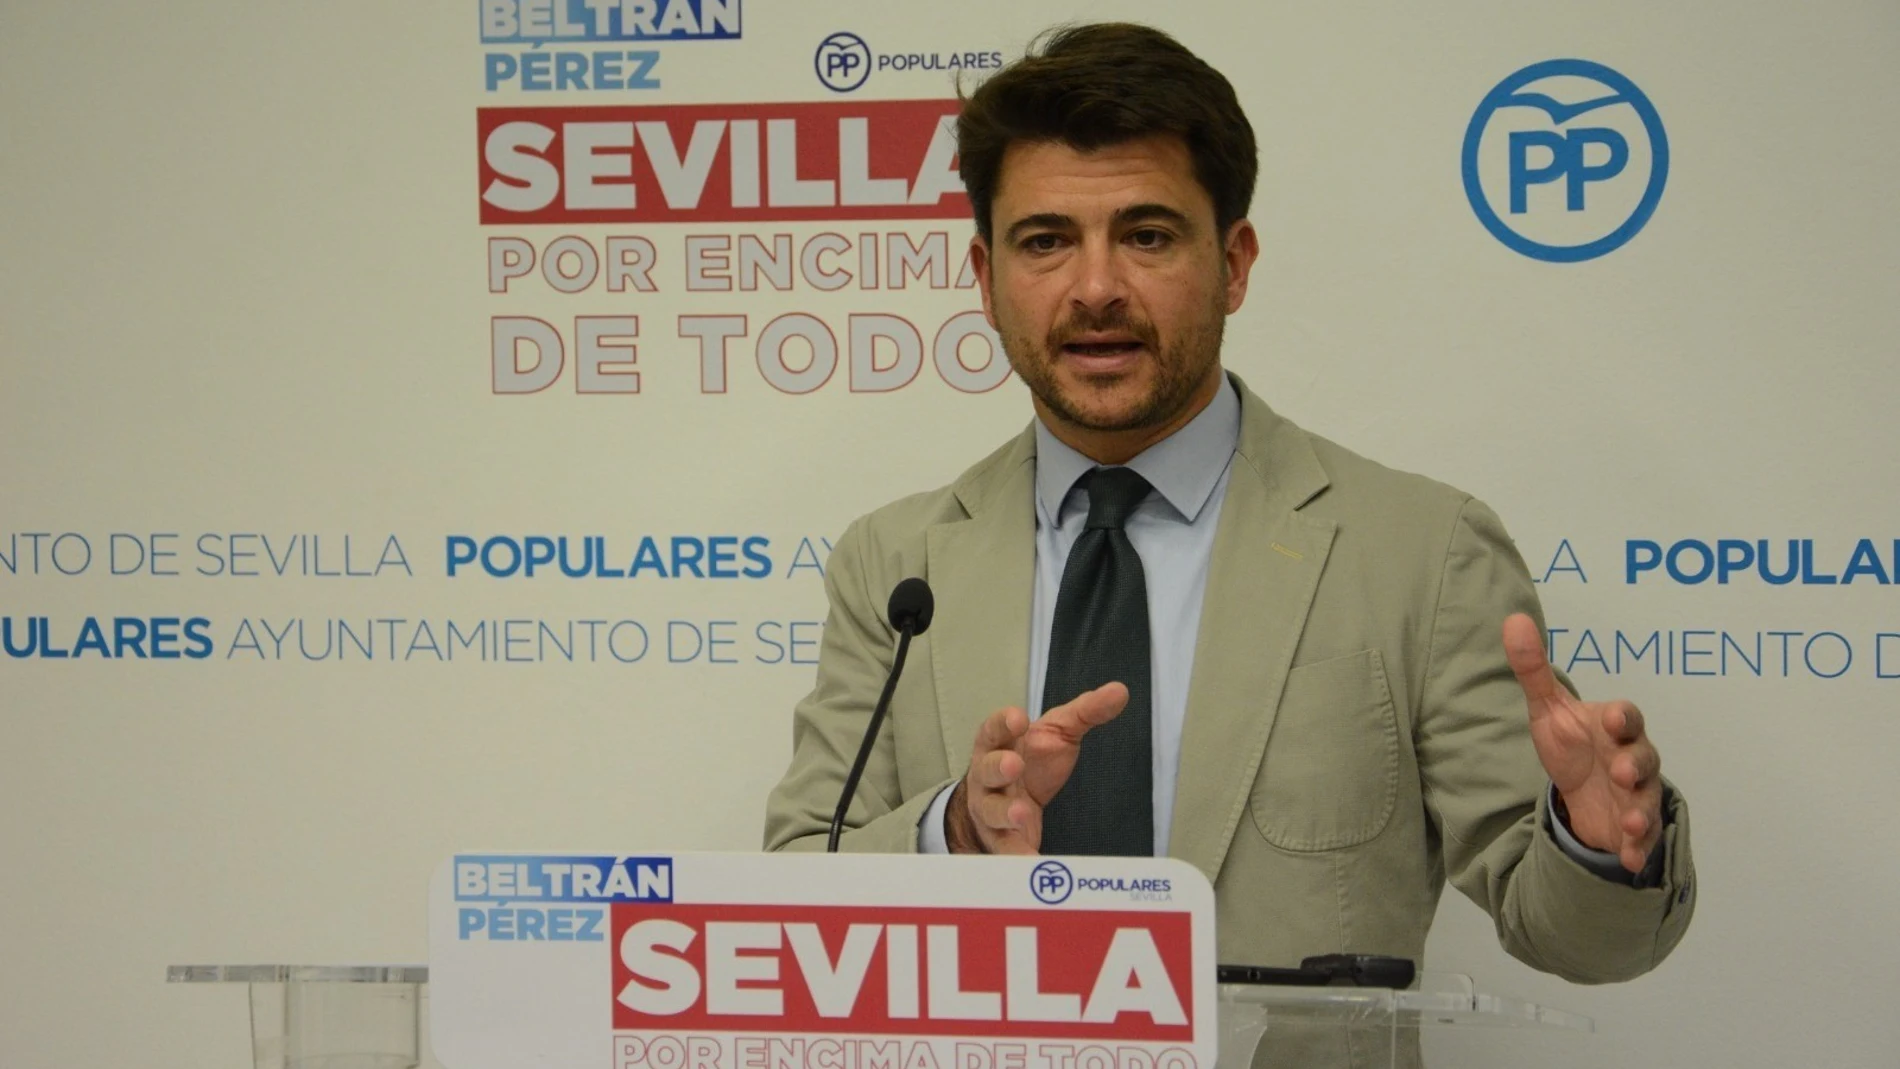 Beltrán Pérez es el portavoz y canditato a la Alcaldía por el Partido Popular